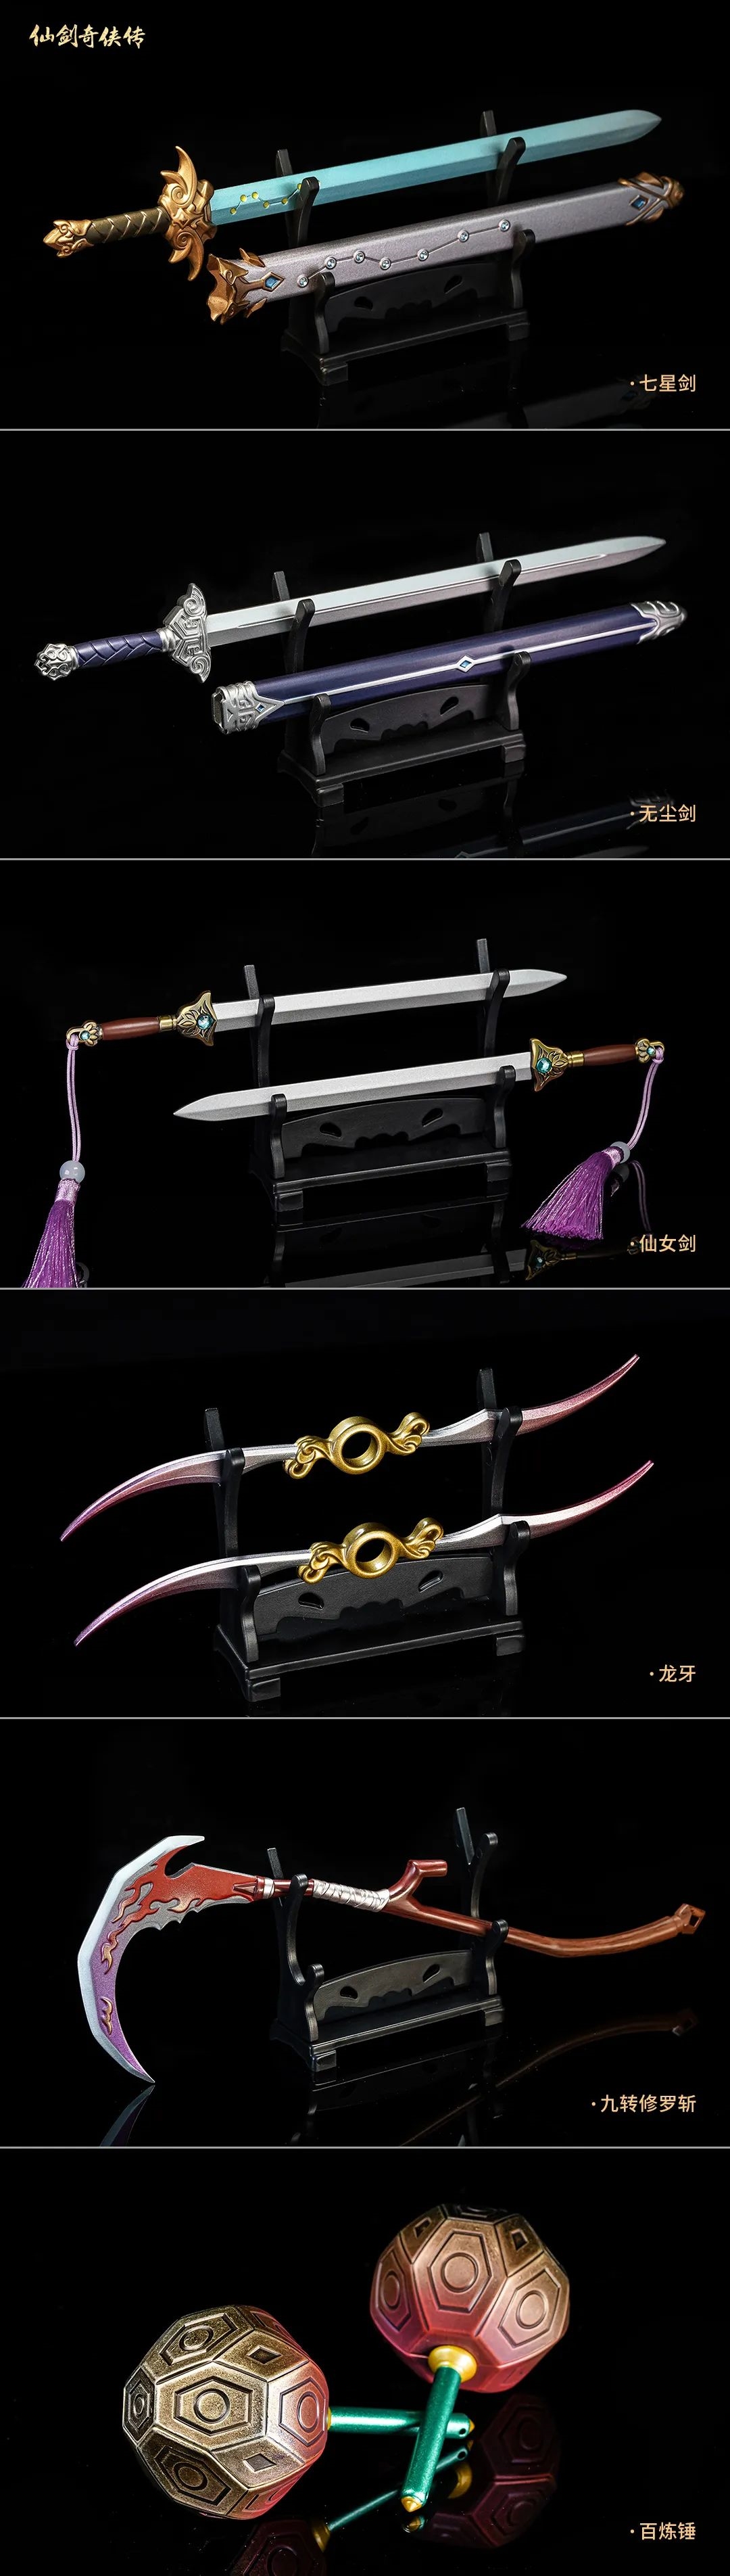 《仙剑》官方武器模型上架：698元 有十一件经典武器